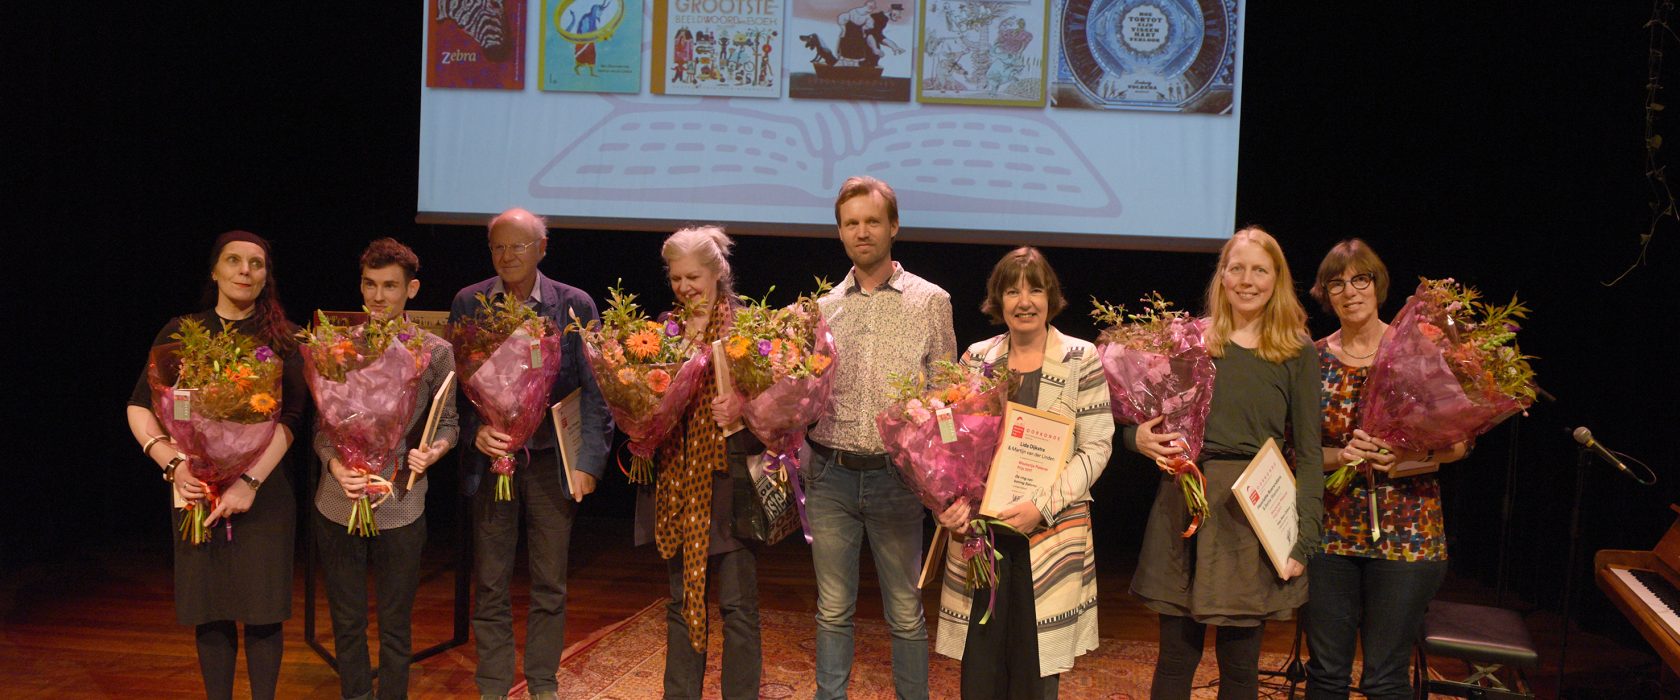 Woutertje Pieterse Prijs 2017